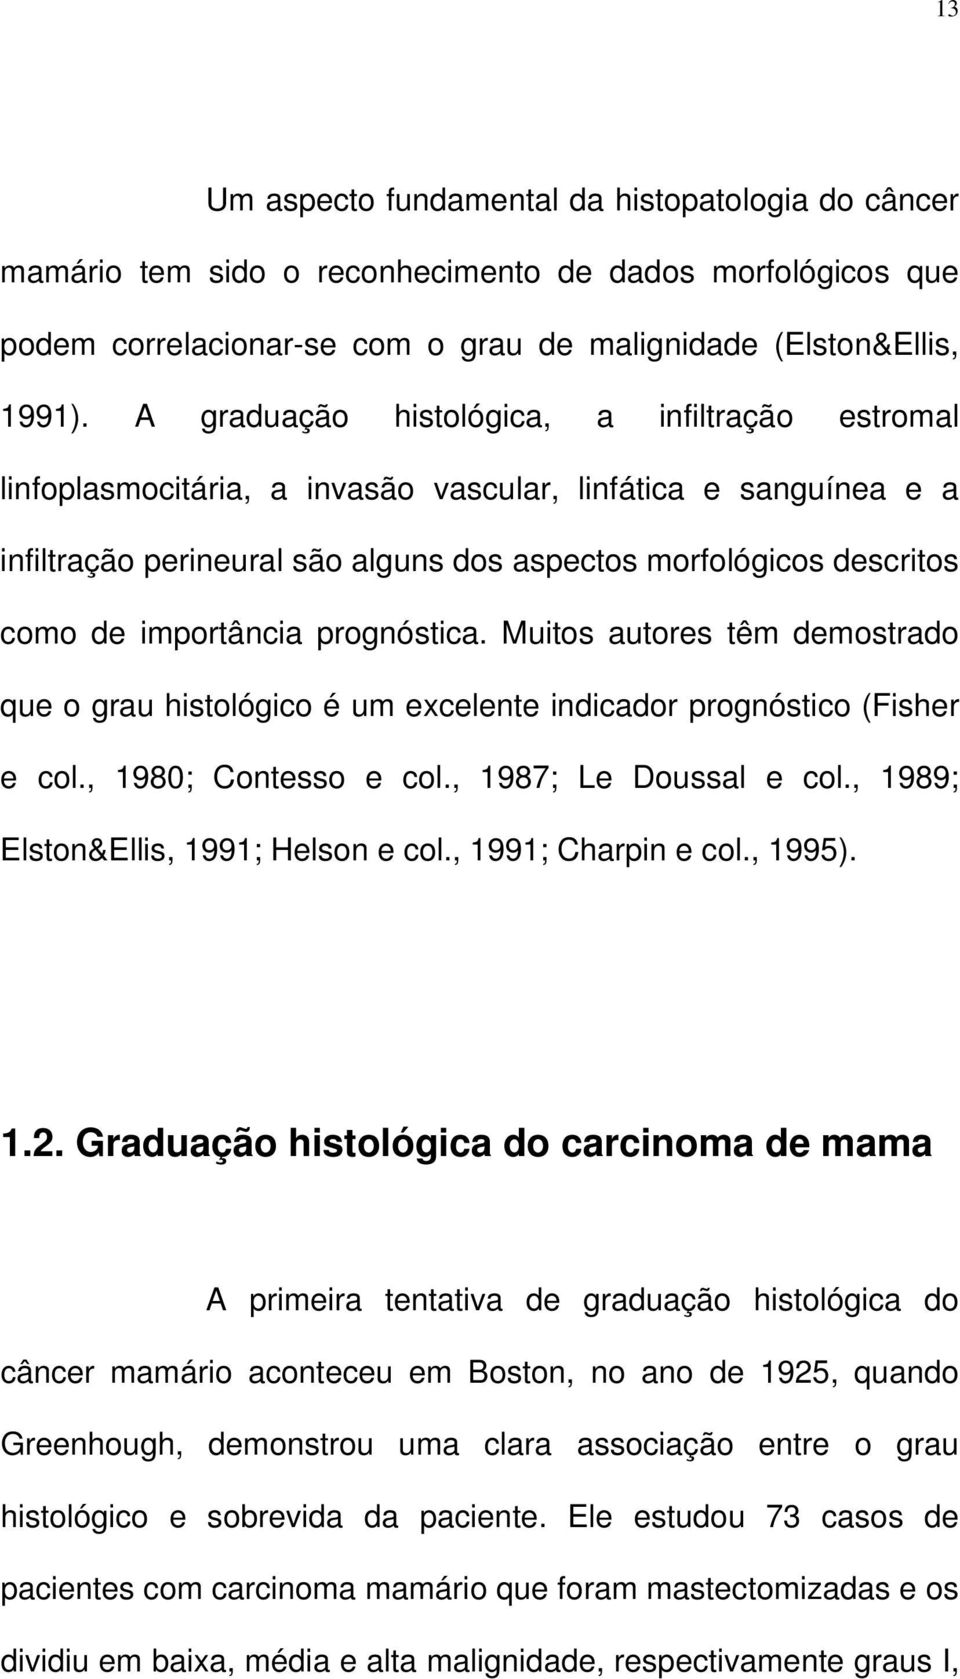 importância prognóstica. Muitos autores têm demostrado que o grau histológico é um excelente indicador prognóstico (Fisher e col., 1980; Contesso e col., 1987; Le Doussal e col.